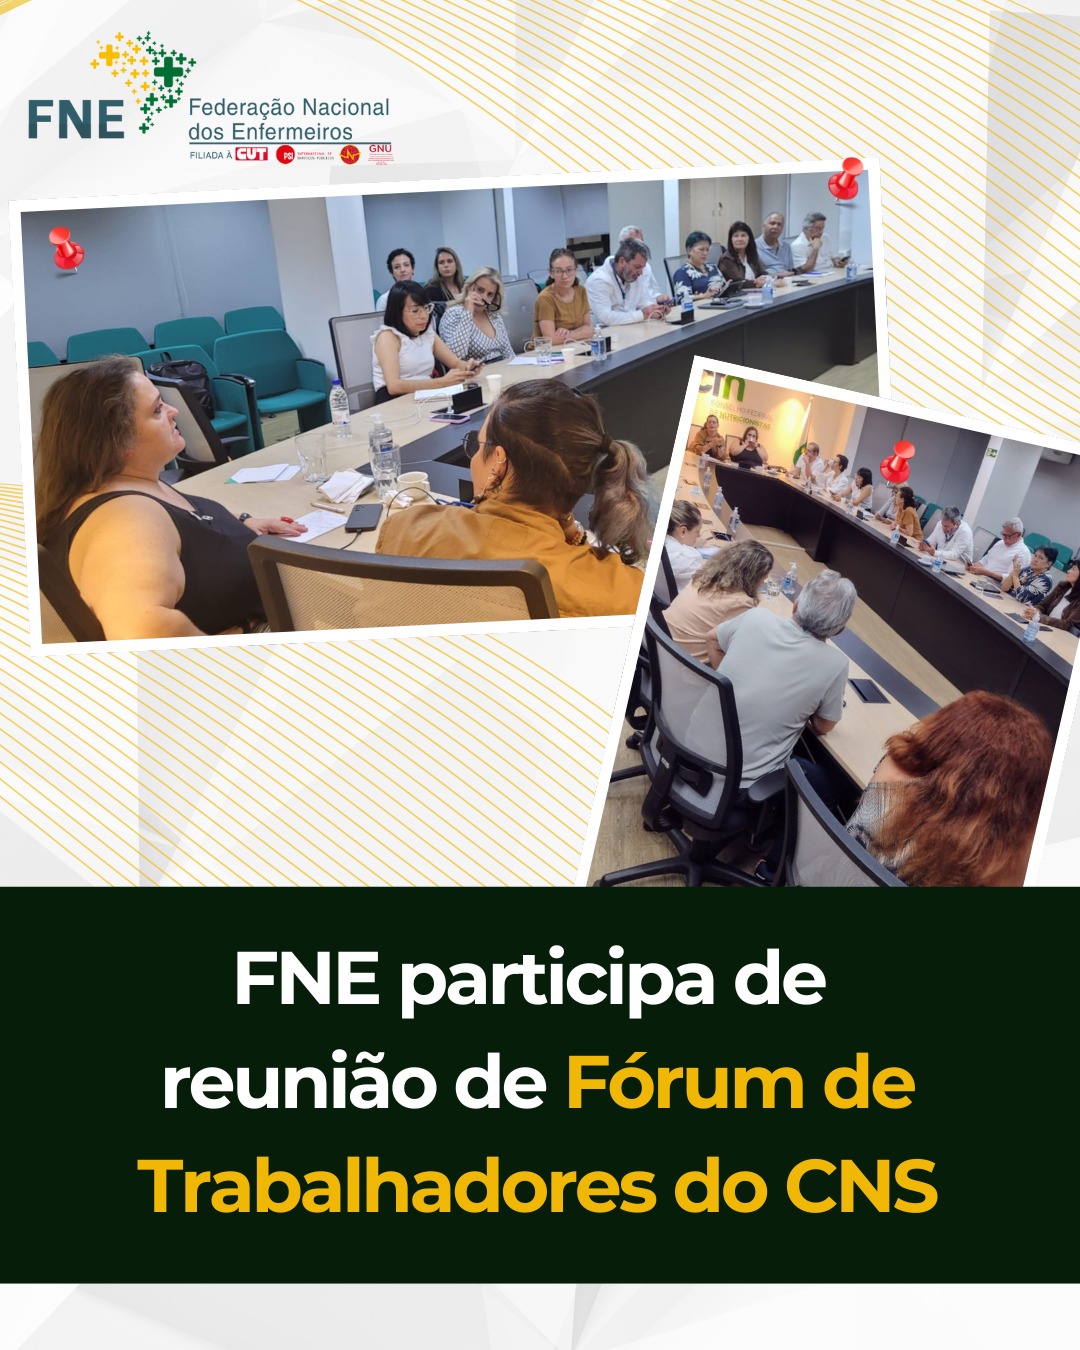 FNE participa de reunião de Fórum de Trabalhadores do CNS